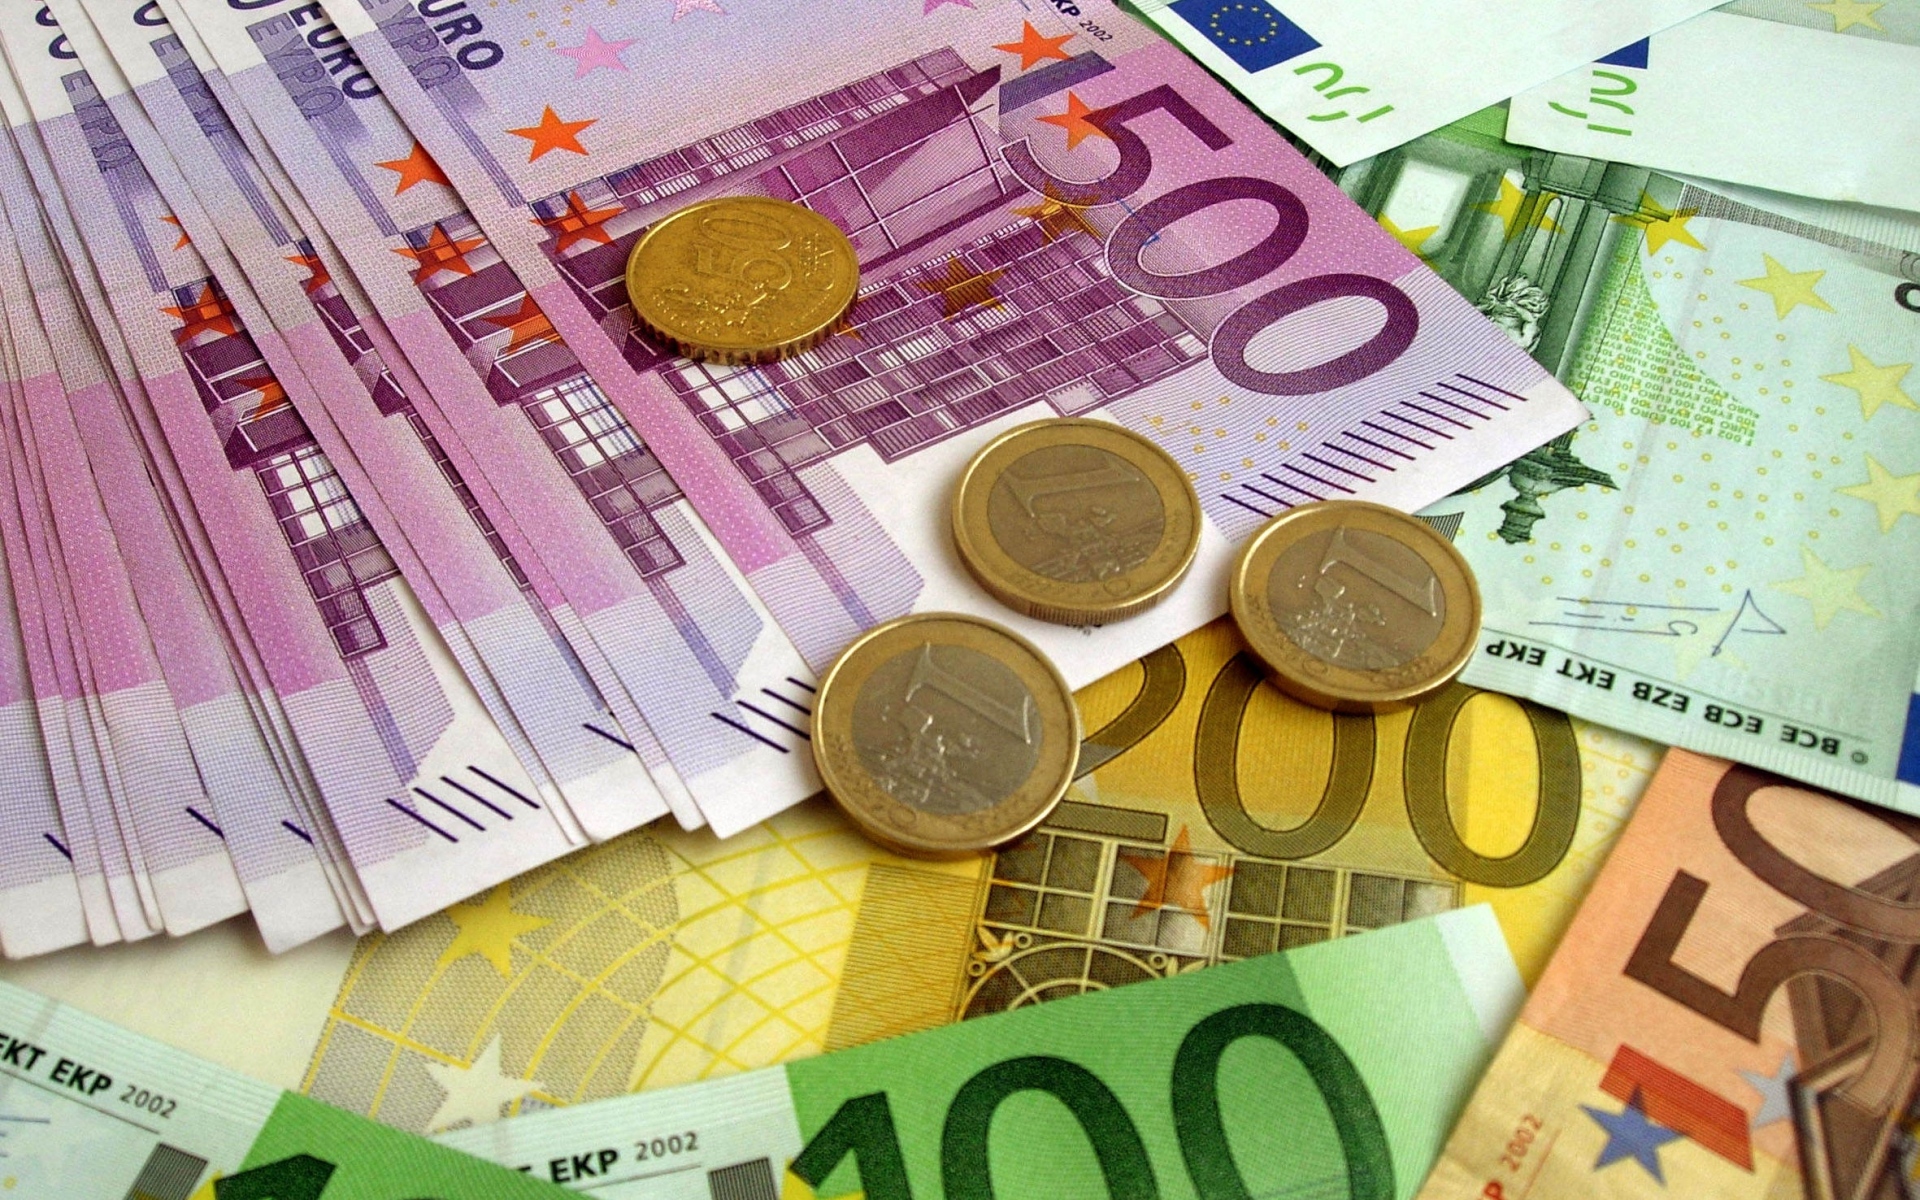 Картинки деньги, евро, банкноты, монеты фото и обои на рабочий стол